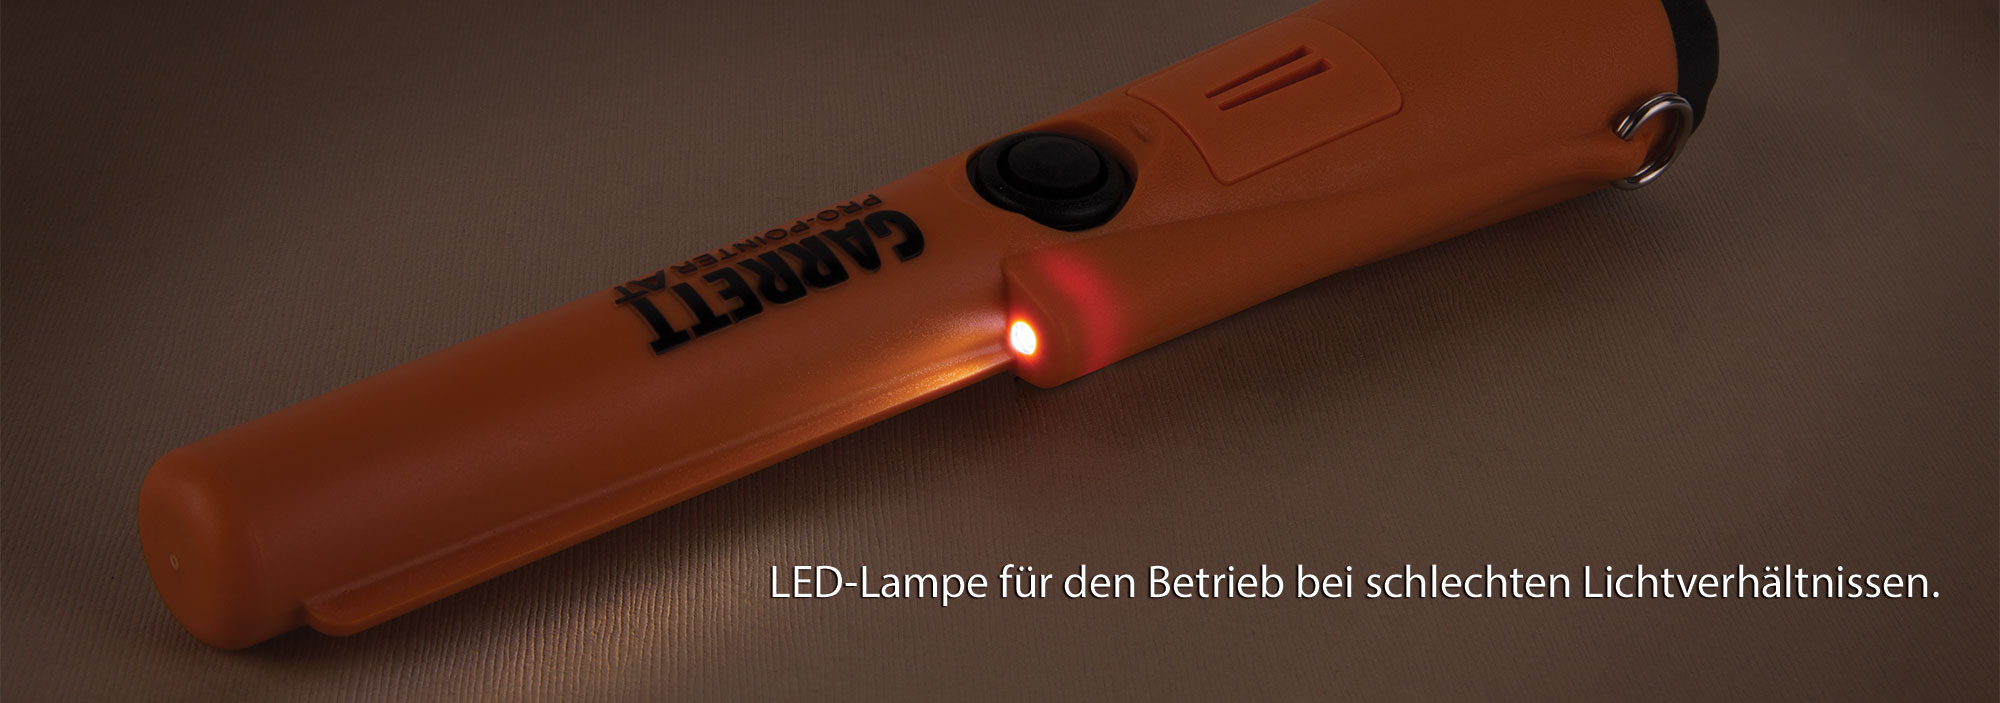 LED-Lampe für den Betrieb bei schlechten Lichtverhältnissen.